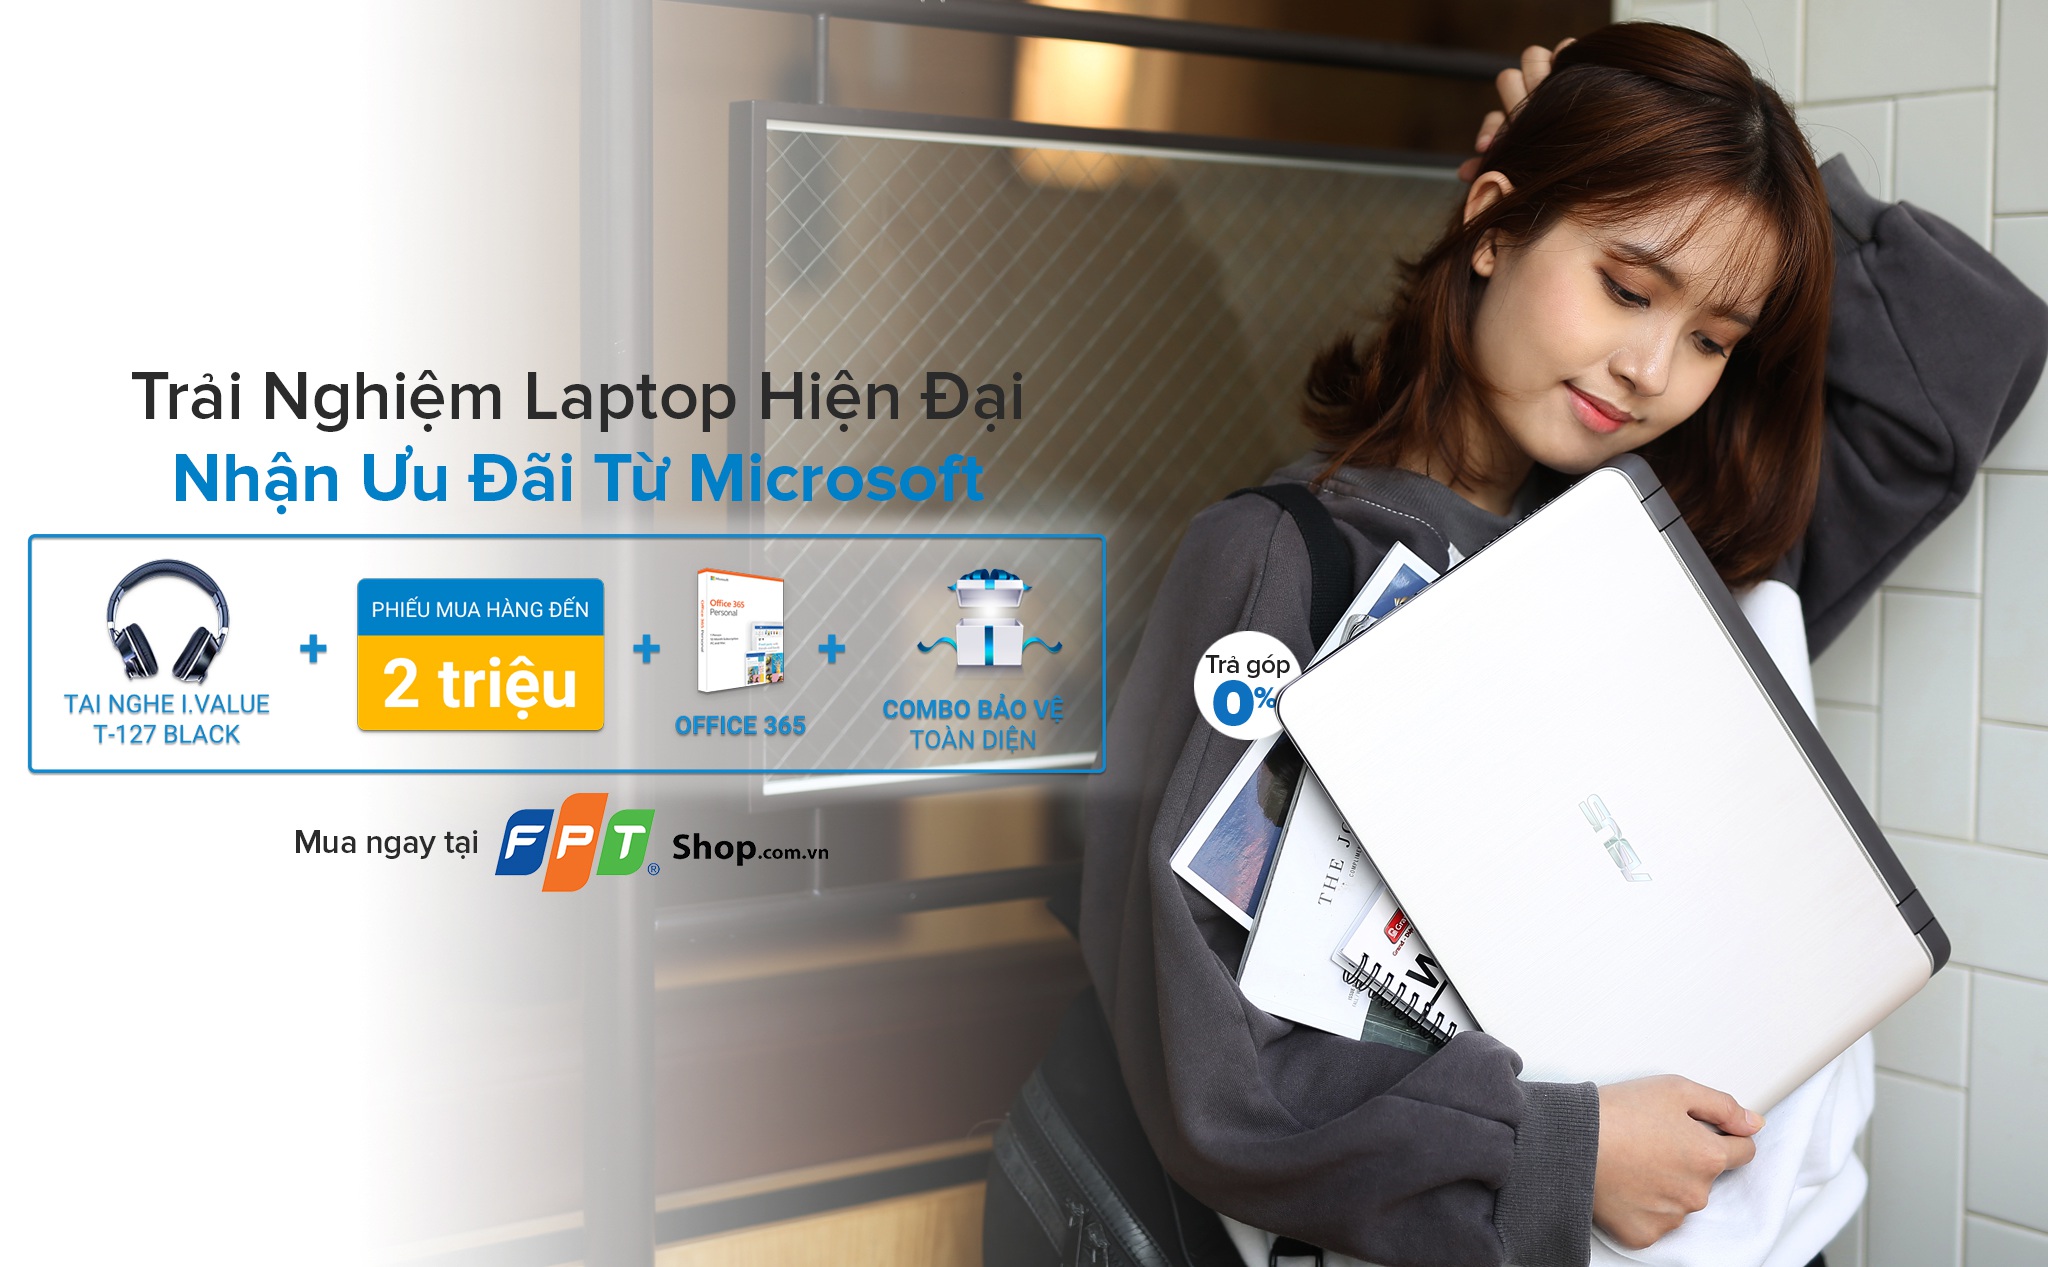 [QC] Đến FPT Shop sắm laptop hiện đại với chỉ từ 5,29 triệu đồng